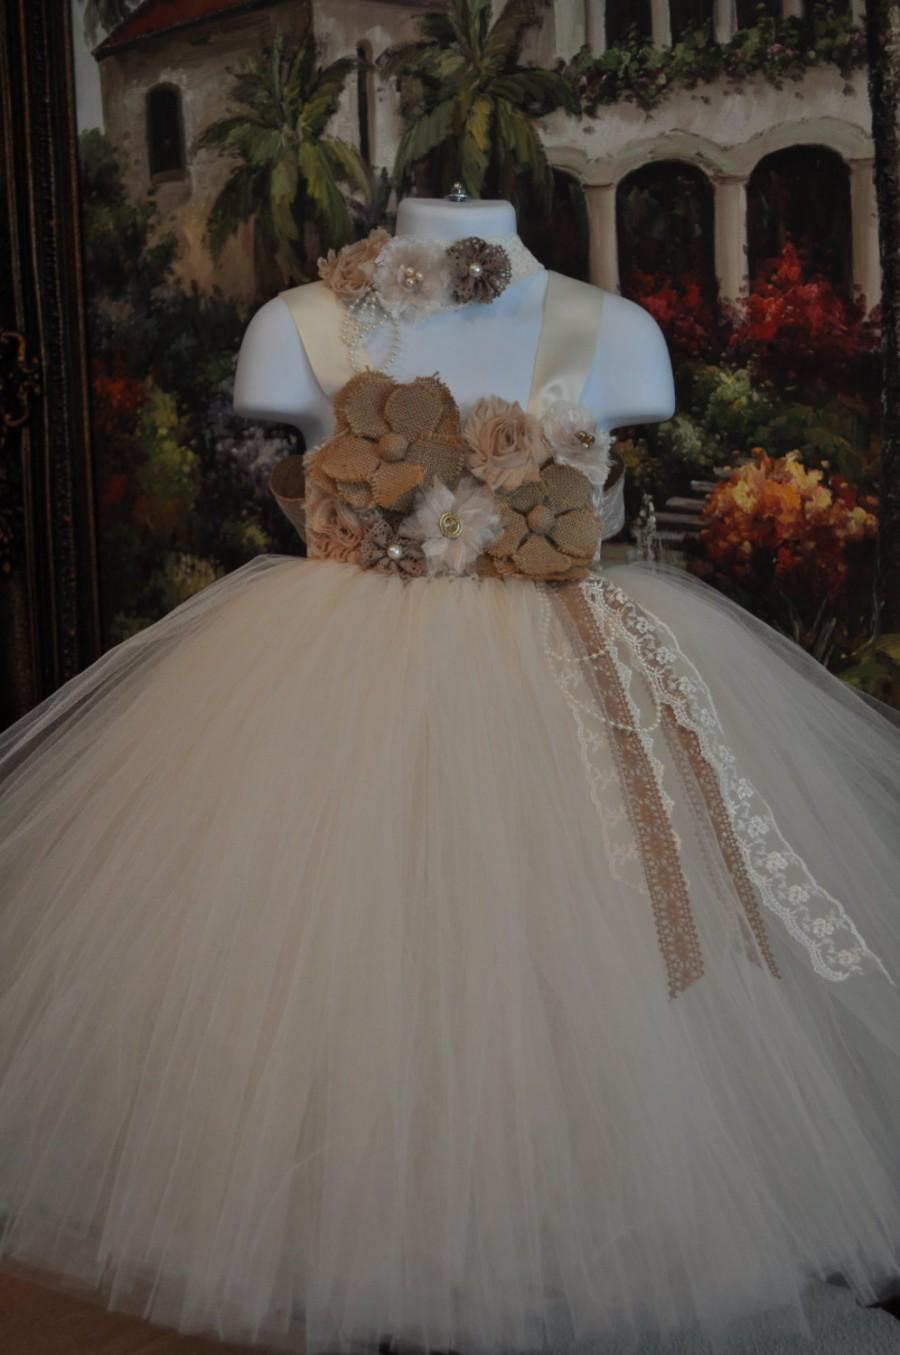 Wedding - Special Occasion Dress, Flower Girl Dress, Tutu Dress, Girls Dress, Baby Dress, Toddler Dress, Rustic Dress, Burlap Dress, Ivory Dress